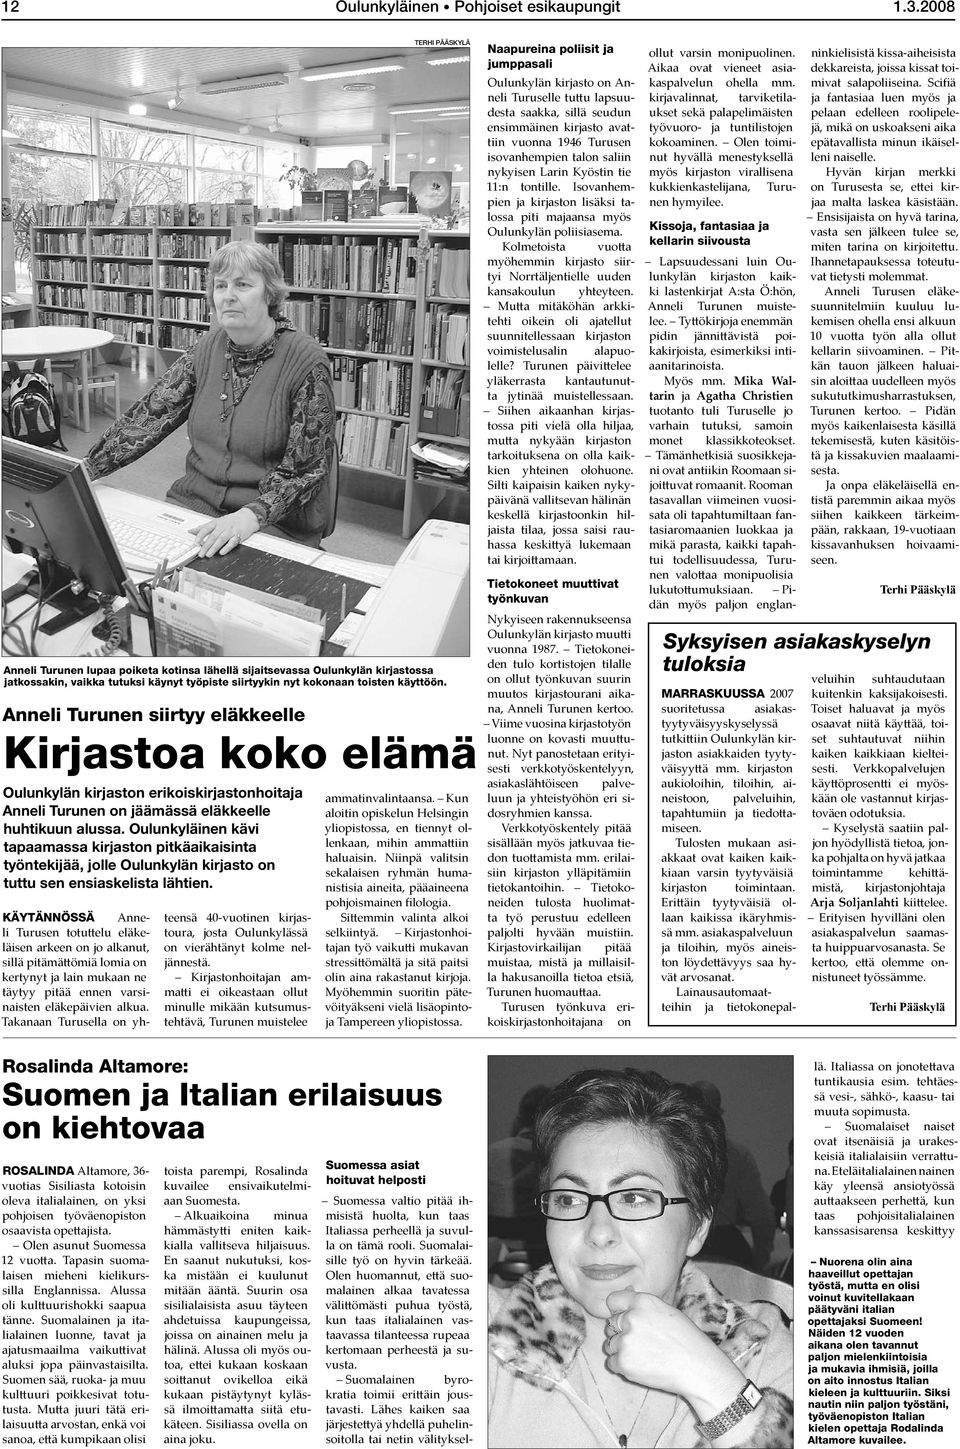 Oulunkyläinen kävi tapaamassa kirjaston pitkäaikaisinta työntekijää, jolle Oulunkylän kirjasto on tuttu sen ensiaskelista lähtien.